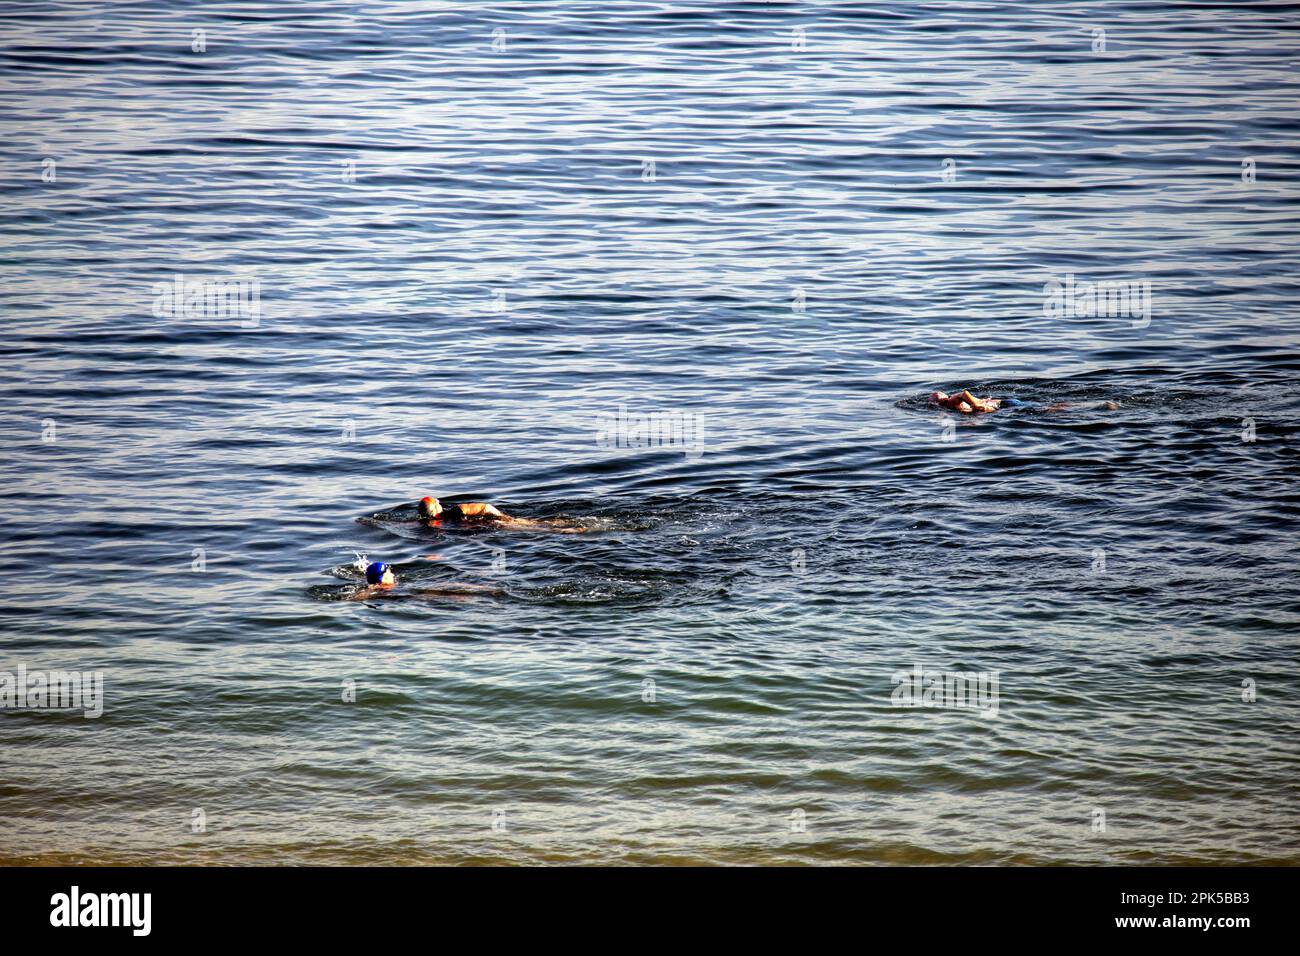 Les personnes qui nagent à la plage de Shoal Bay, Port Stephens, Mid North Coast, Nouvelle-Galles du Sud, Australie. Shoal Bay est la banlieue la plus orientale du Port Steph Banque D'Images